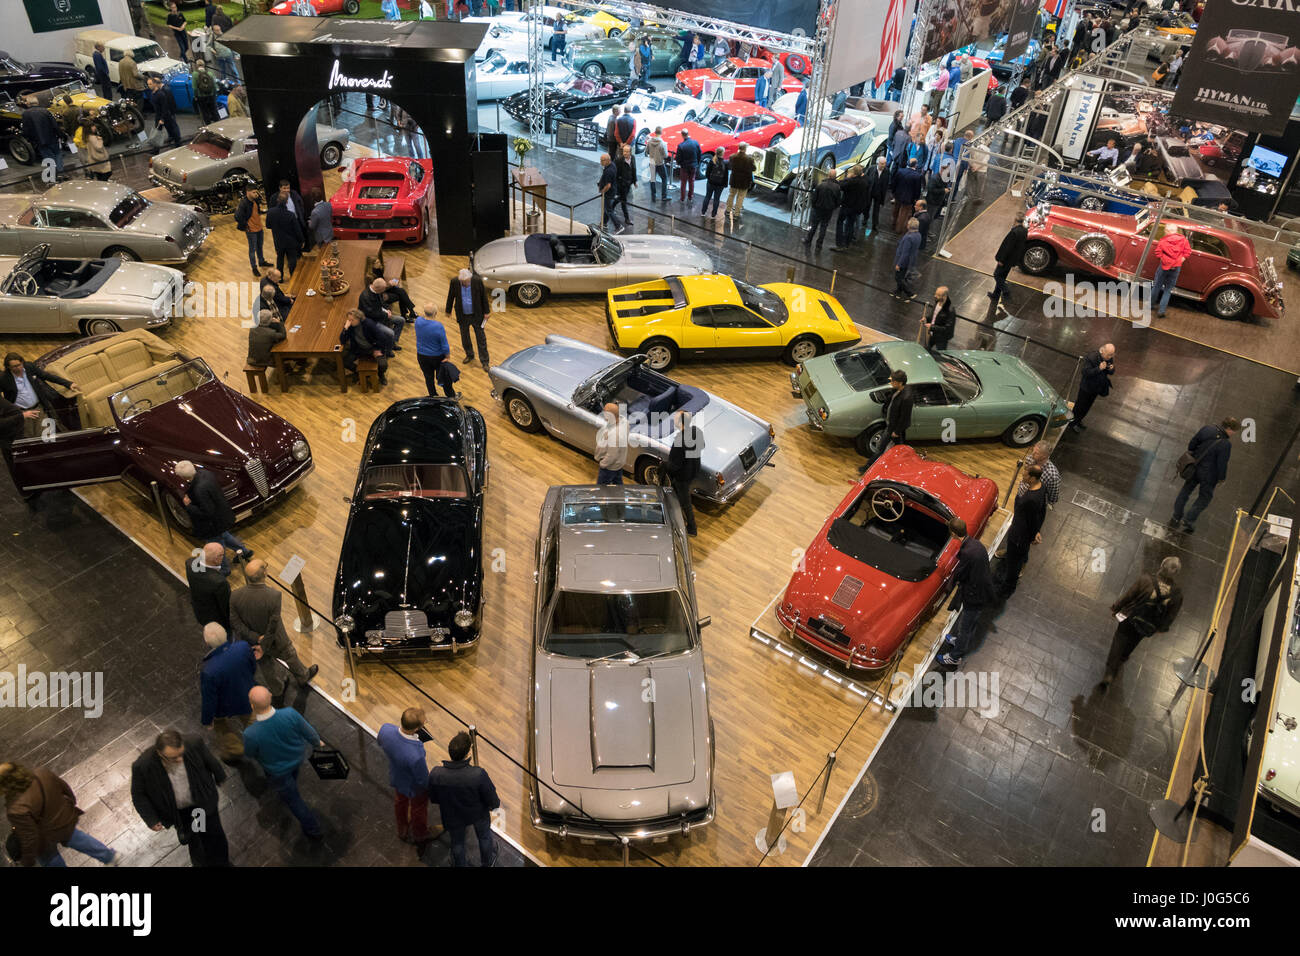 Essen, Allemagne - Apr 6, 2017 : techno classica essen location de voitures d'exposition et les visiteurs. Banque D'Images